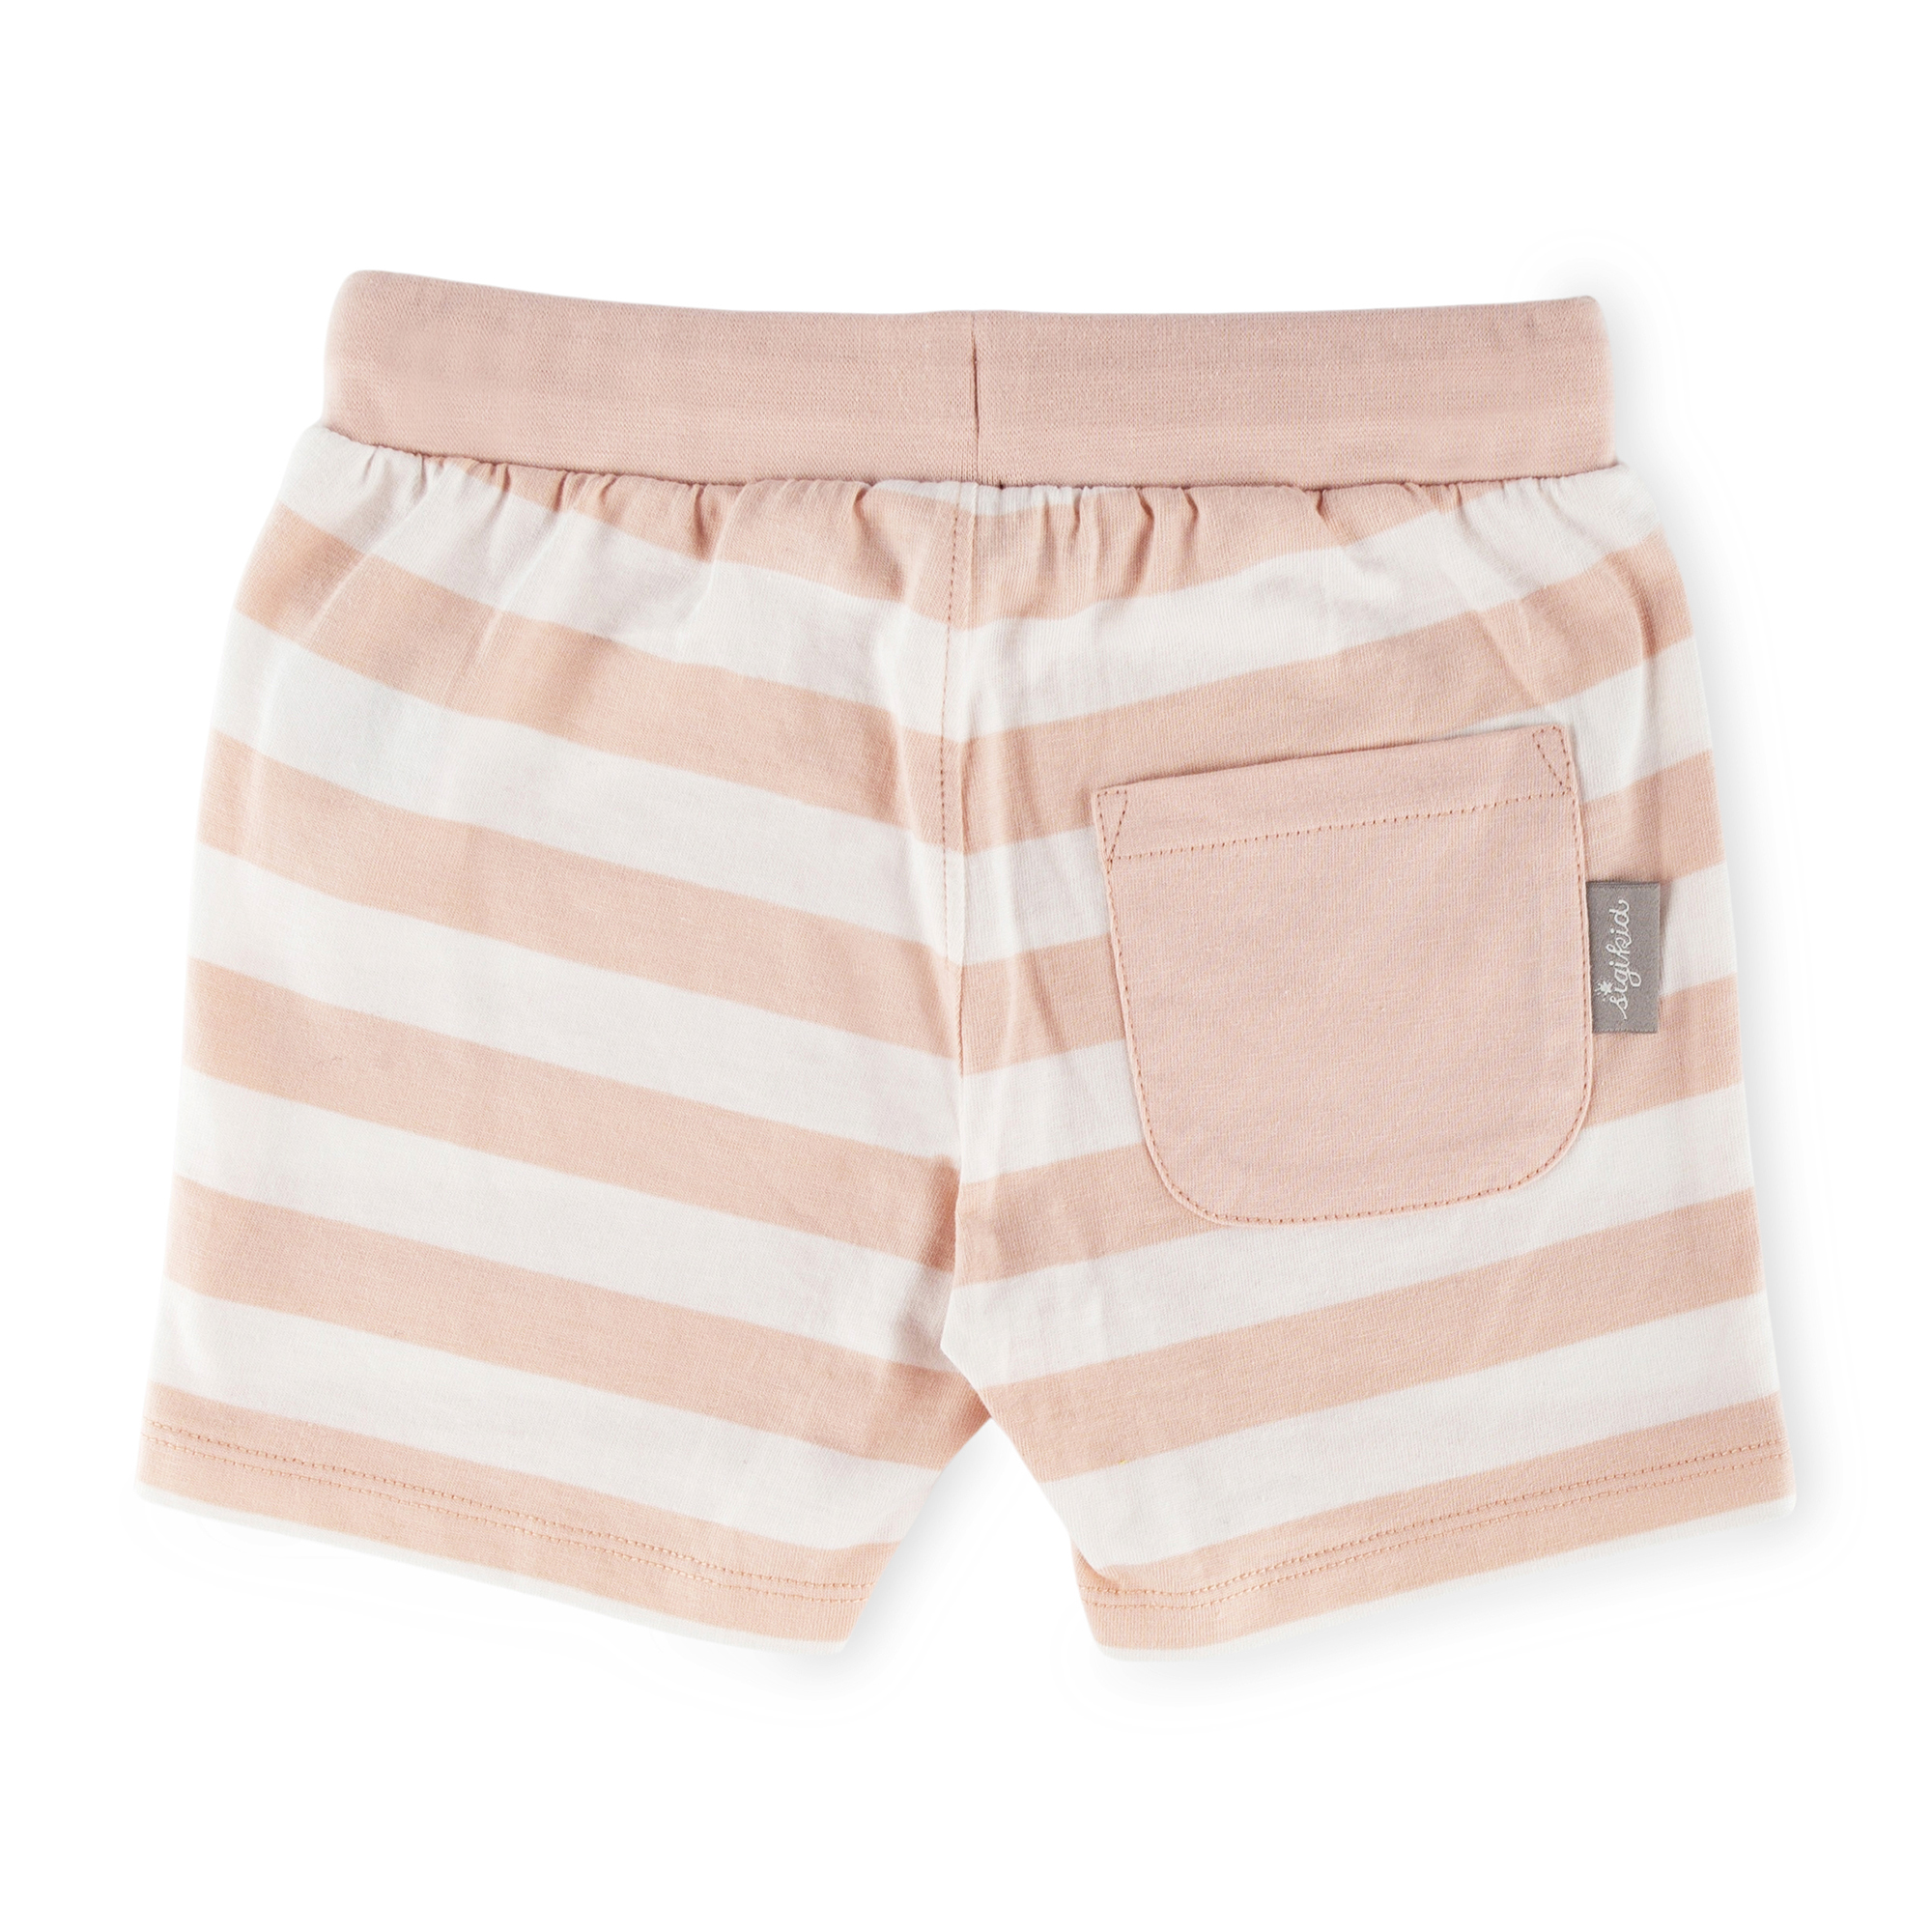 Children's jersey shorts cream/pale pink